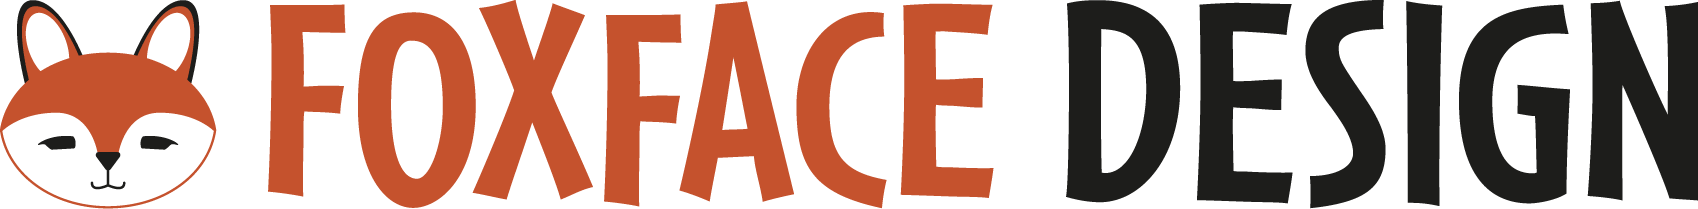 Foxface Design LLC website header logo